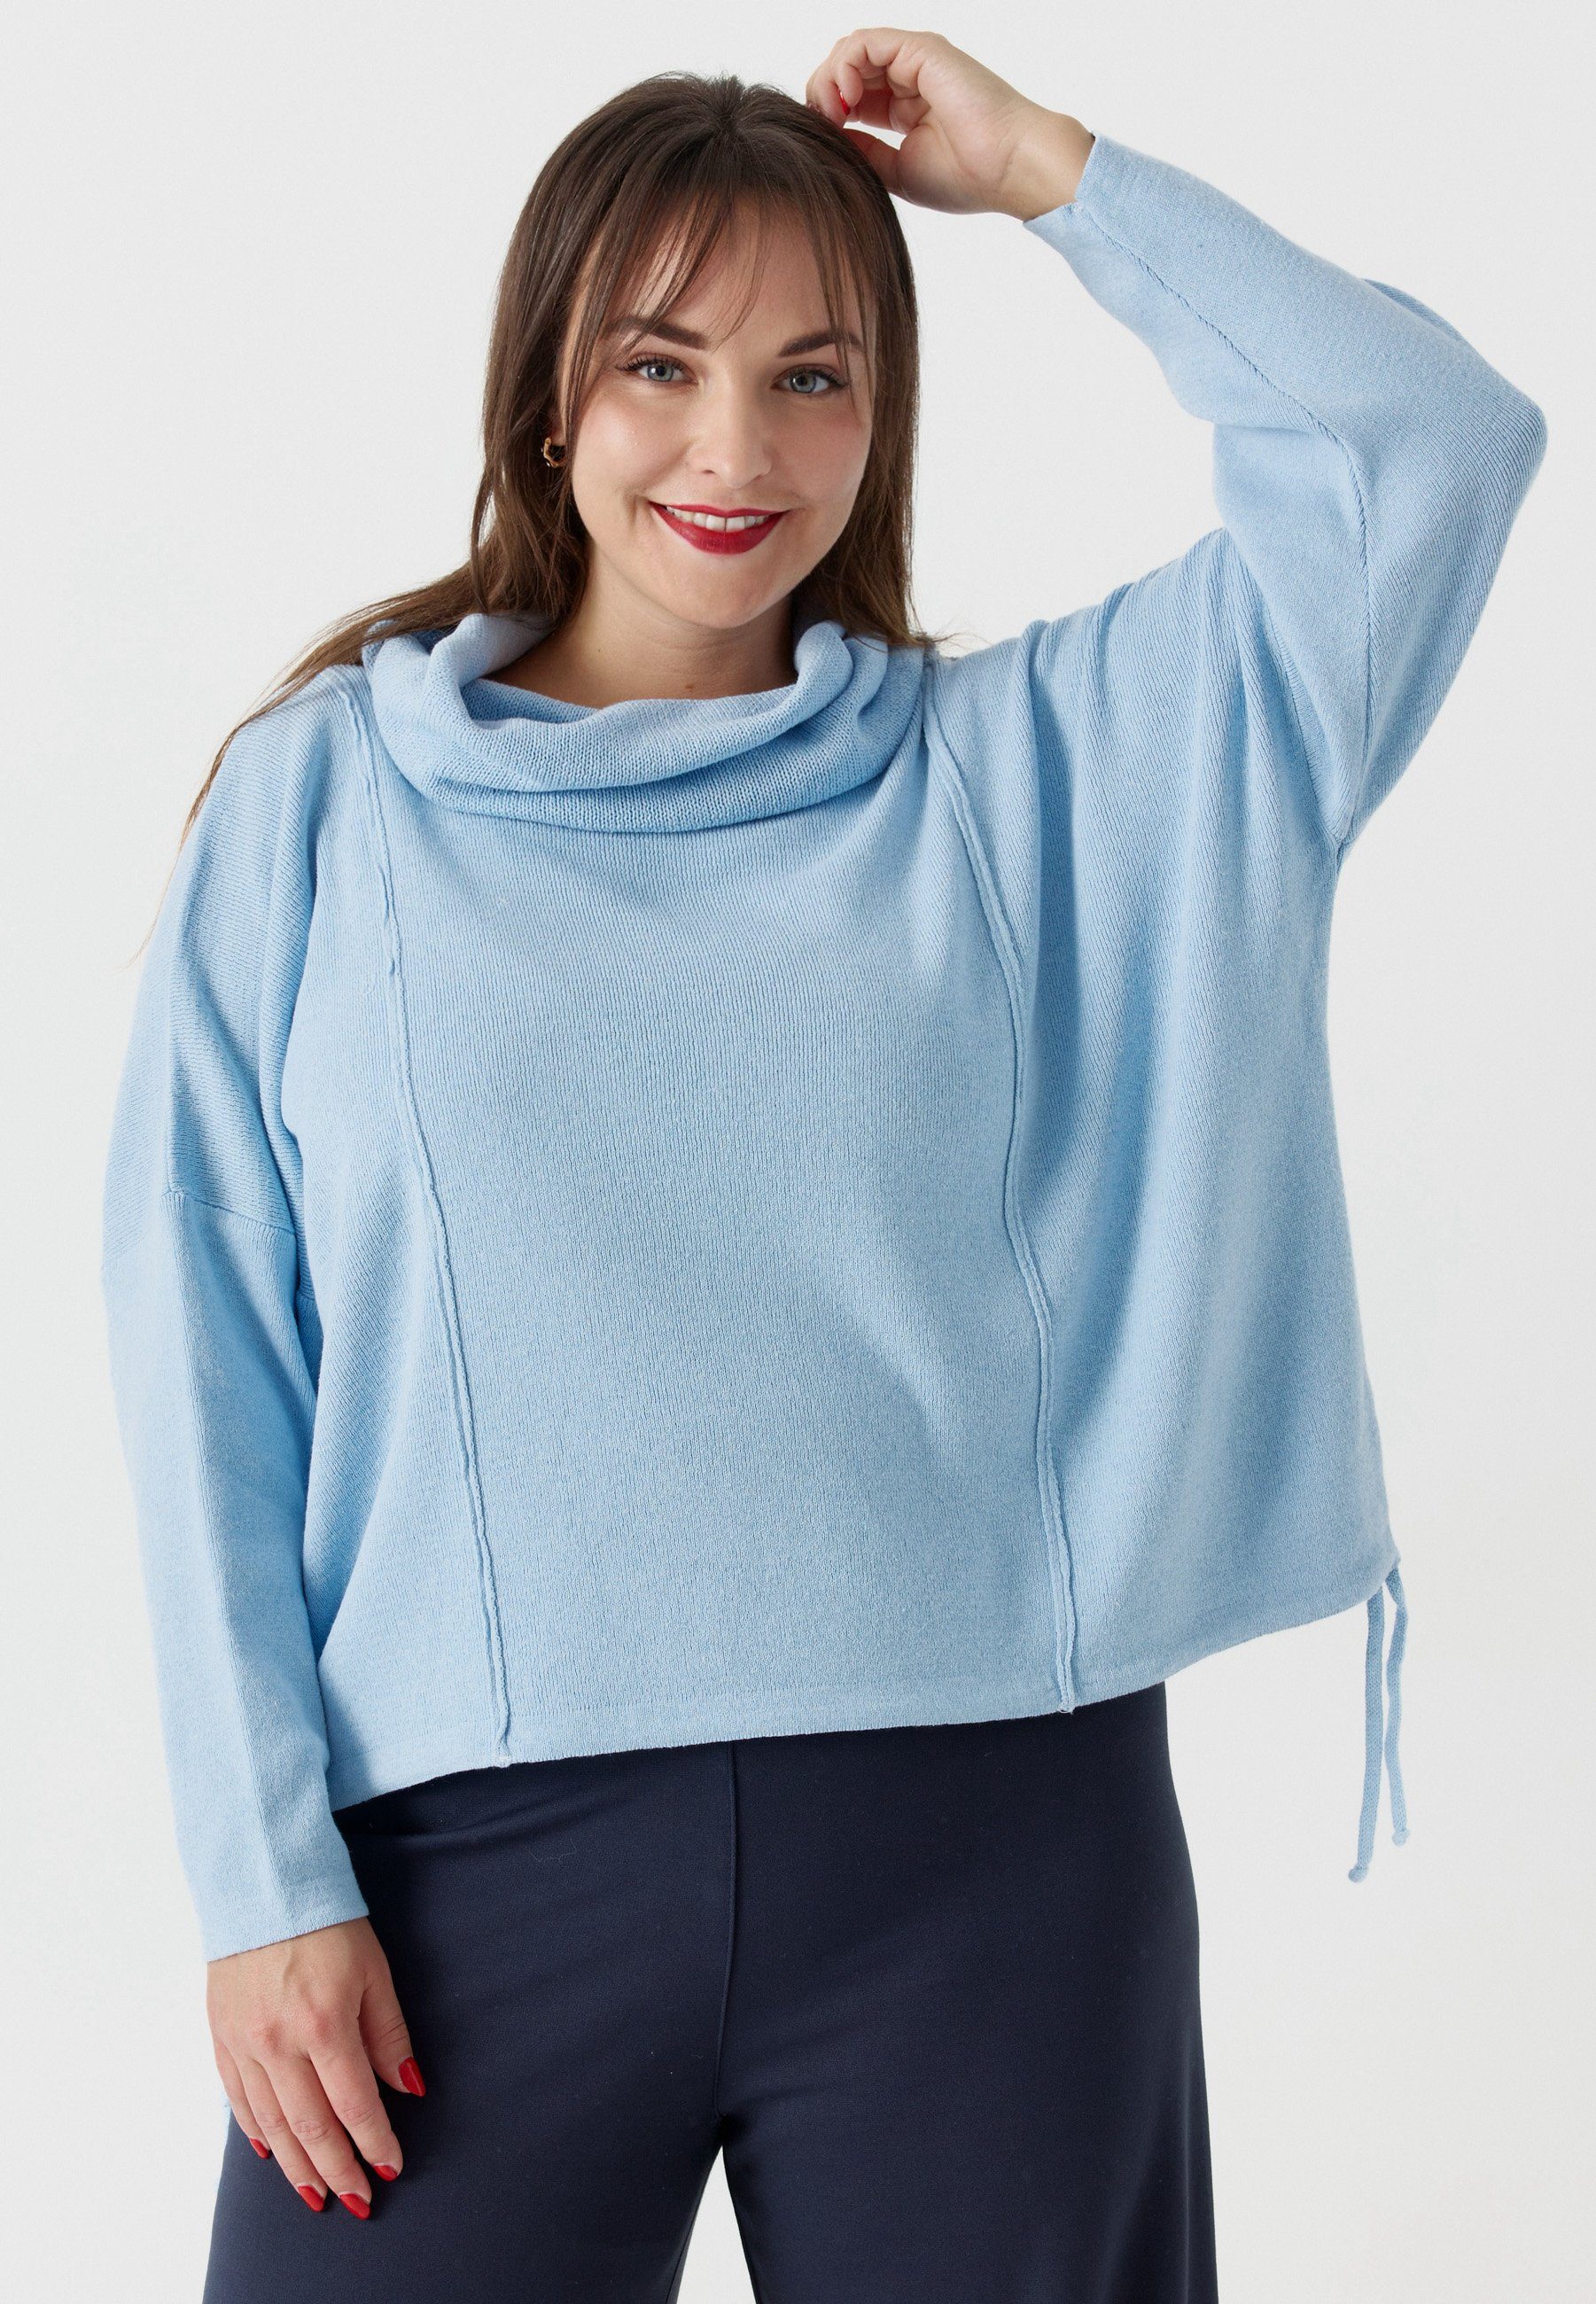 Tunikashirt Pullover Schalkragen Feinstrick Baumwolle mit 'Pure' aus reiner Kekoo Himmelblau